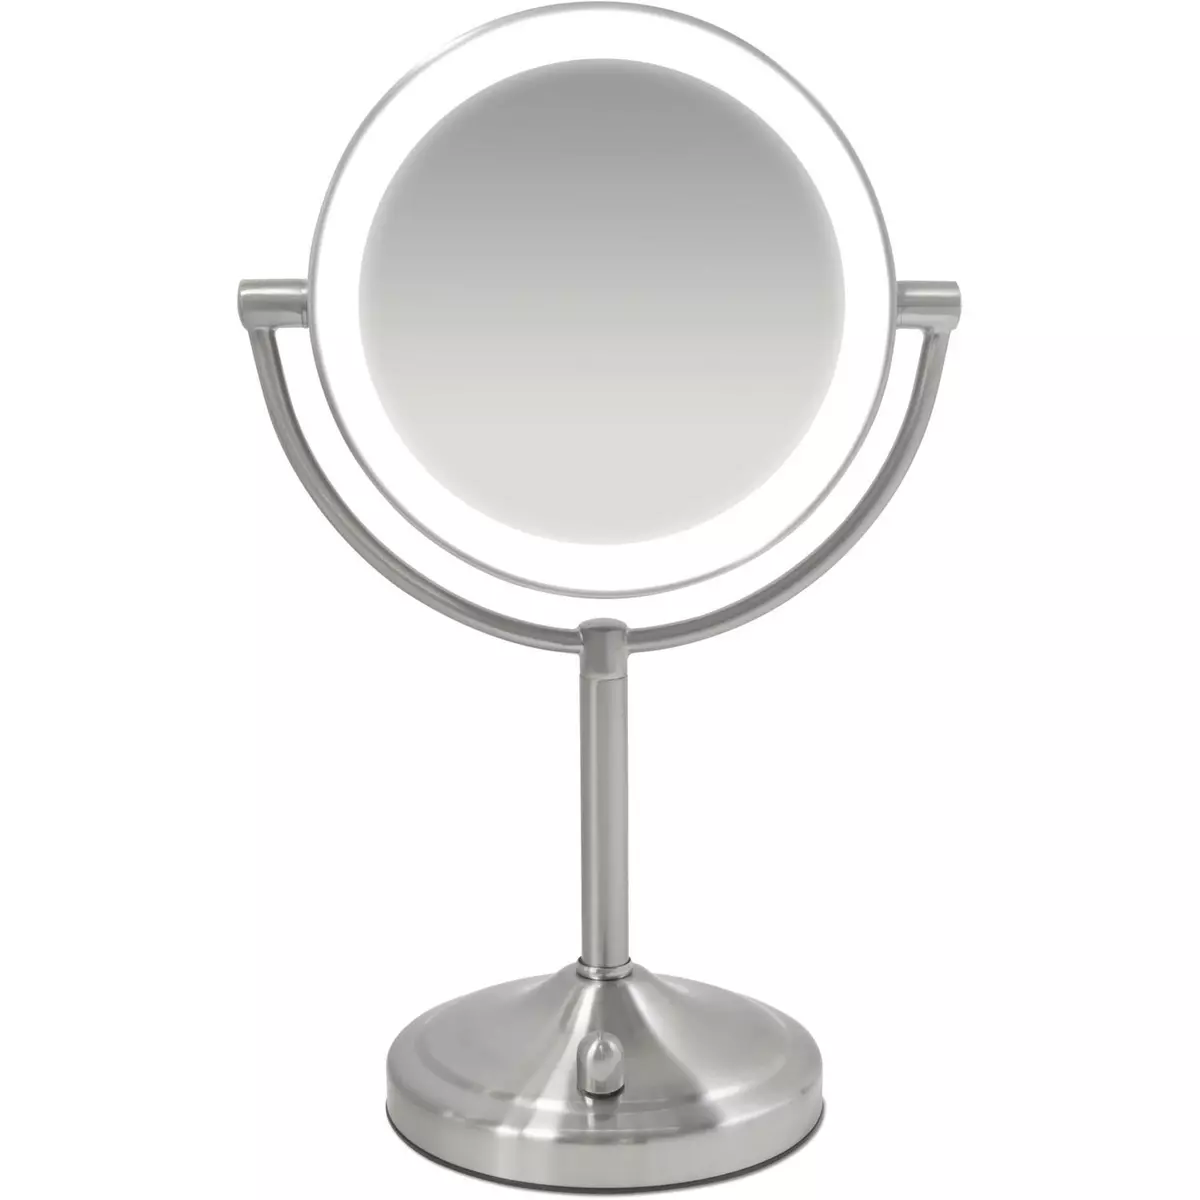 HOMEDICS Miroir lumineux grossissant - HMMIR8160 - Gris